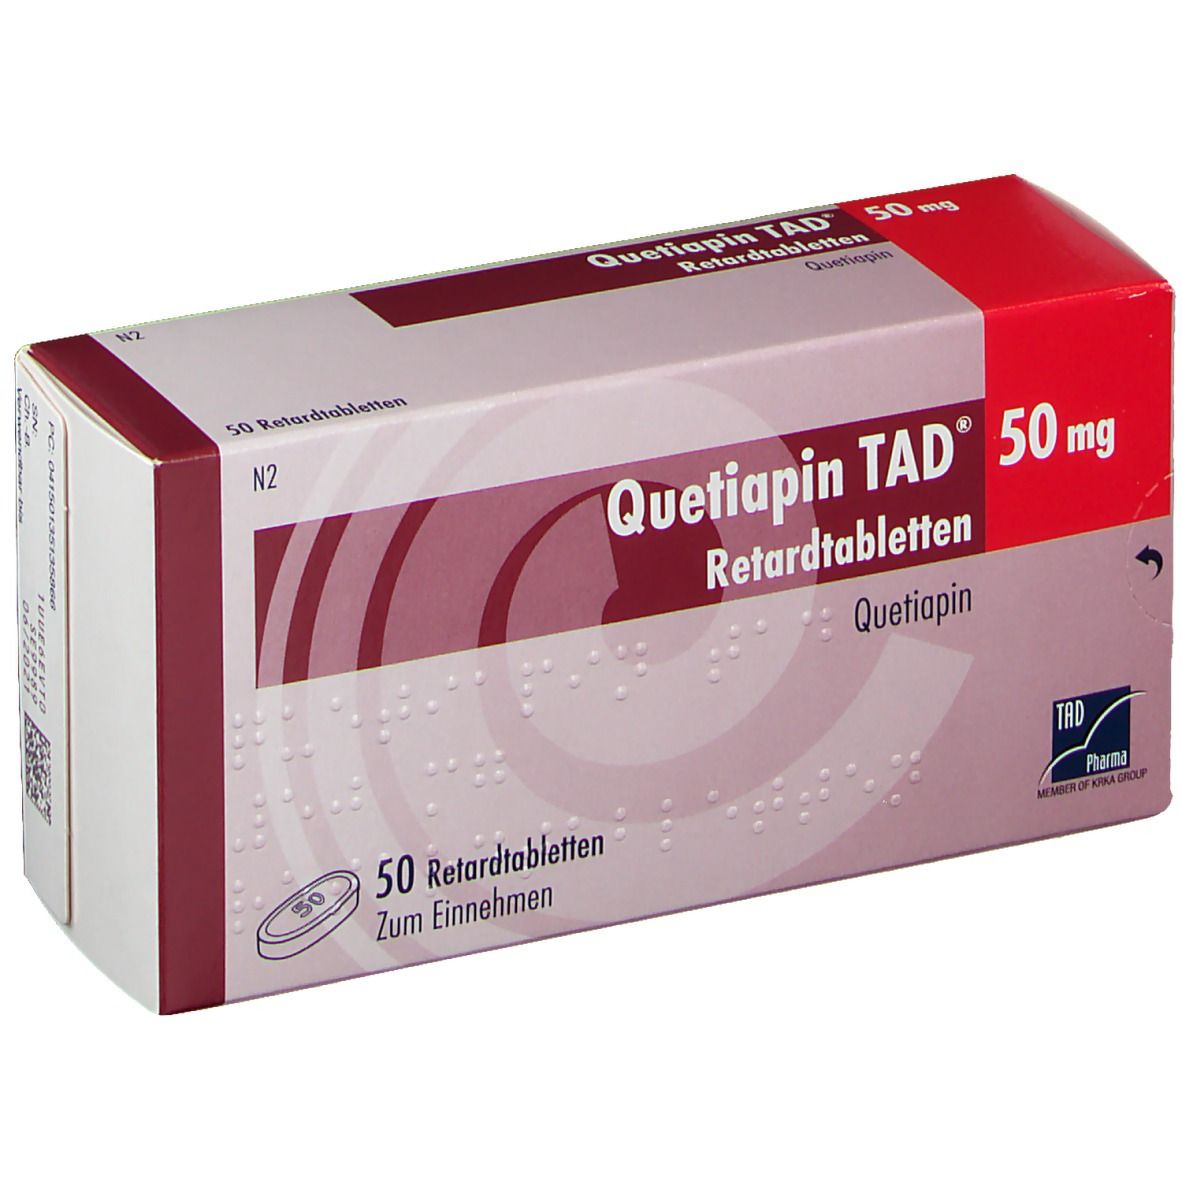 Quetiapin TAD® 50 mg